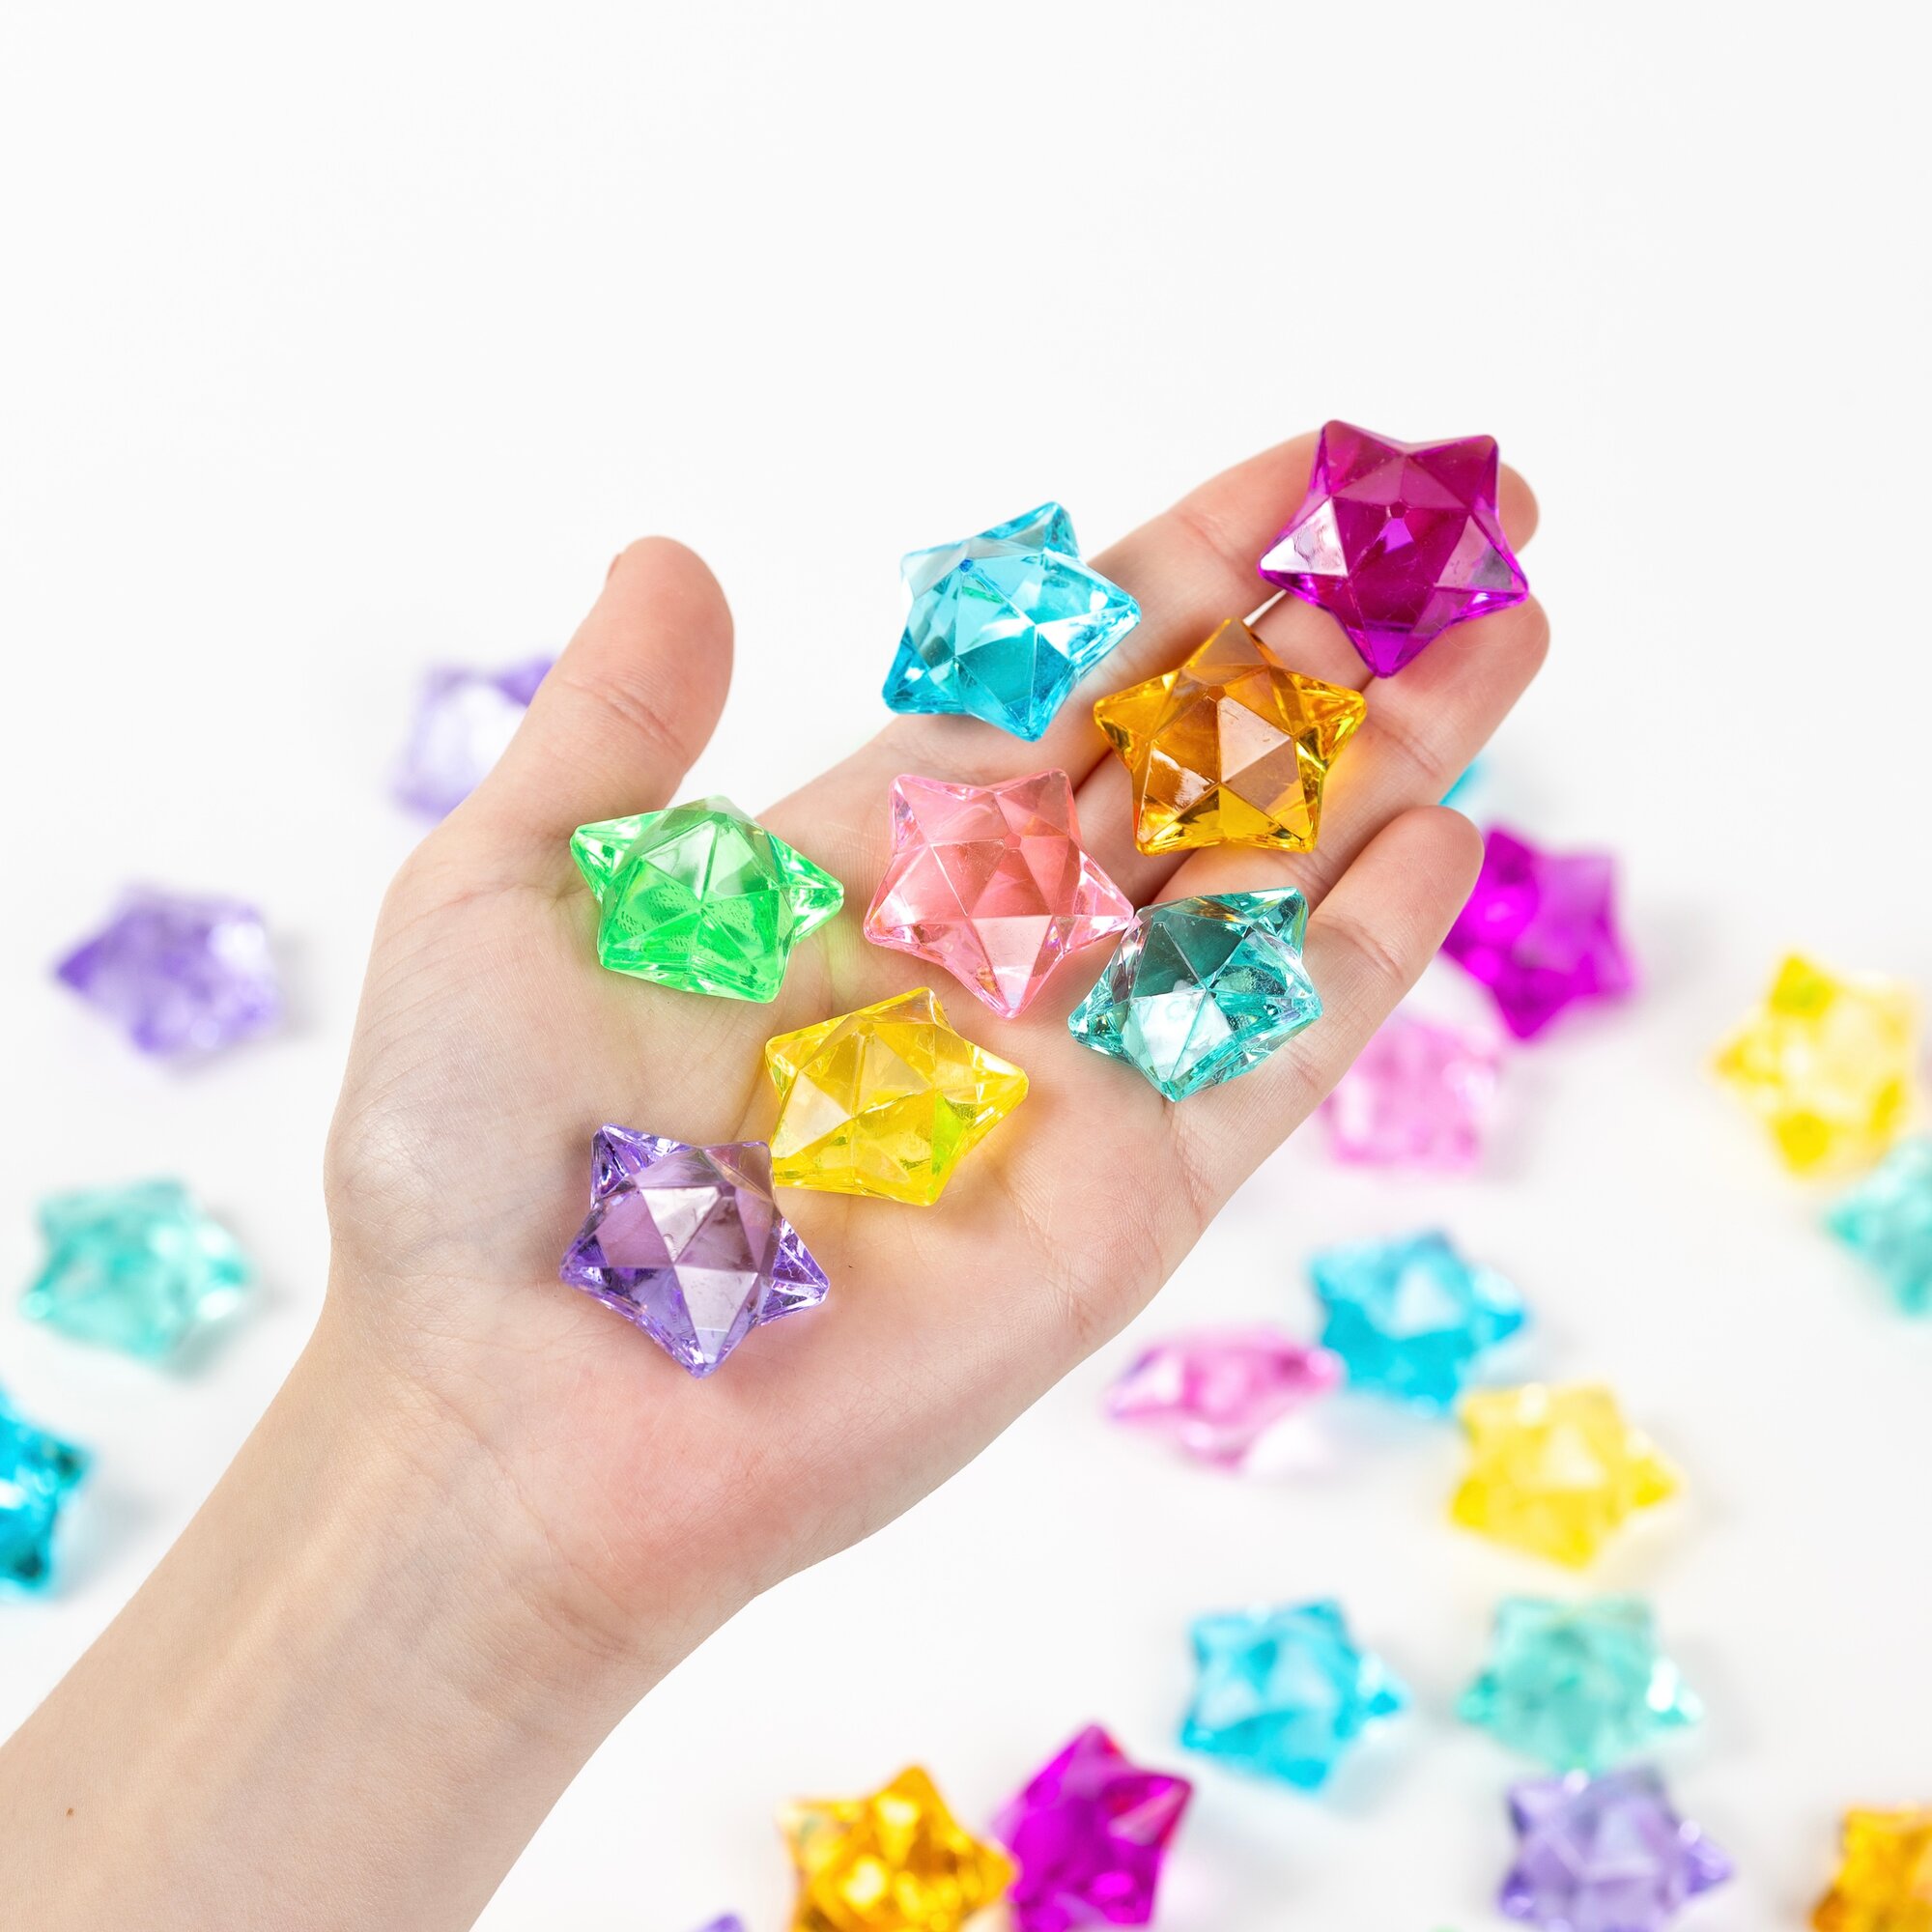 Кристаллы для творчества "Алмазы" большие камушки марблс разноцветные 50 шт Color Si